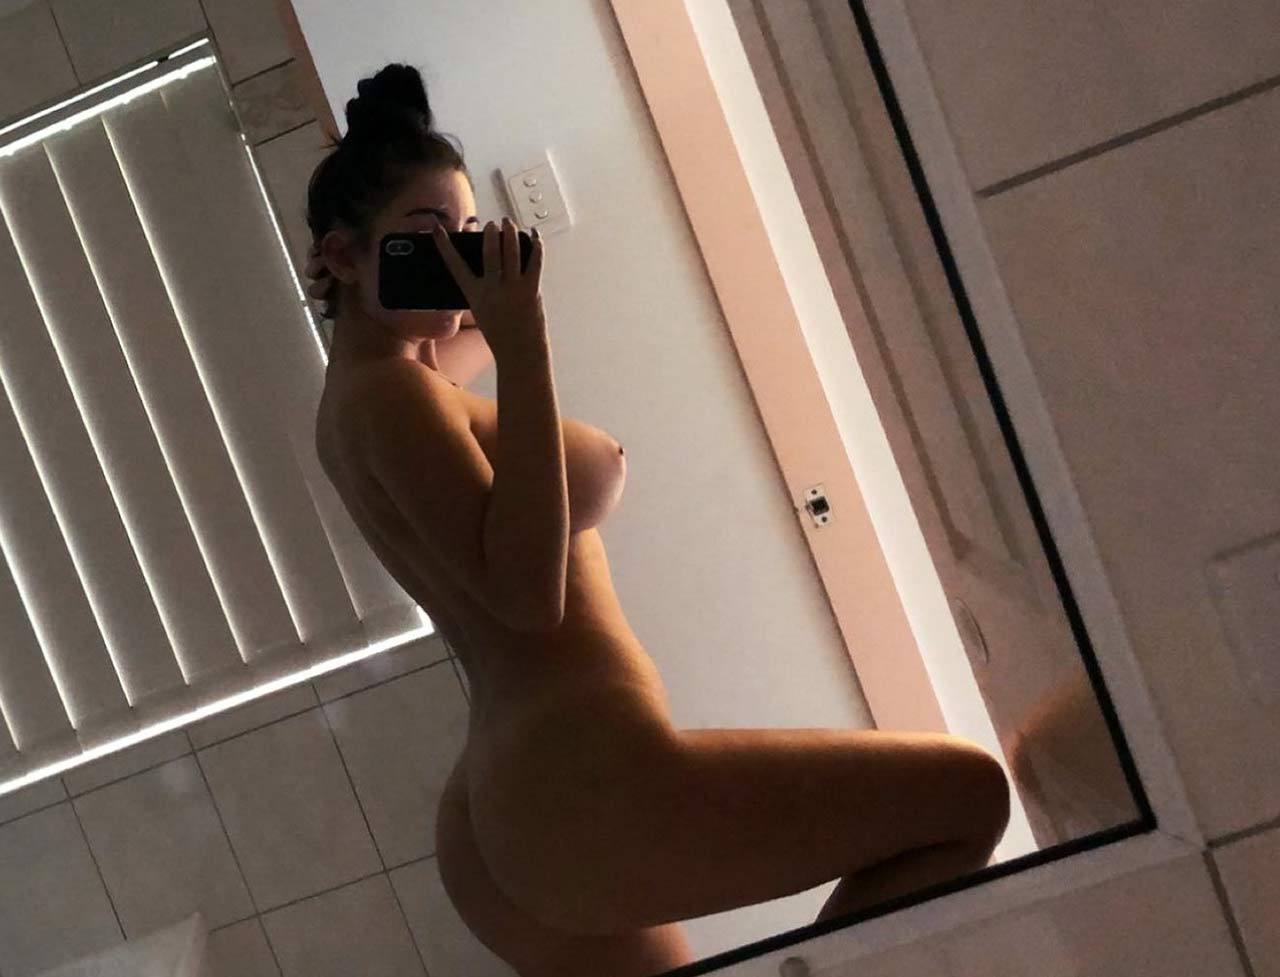 Mikaela Testa Nude Snapchat Photos - Scandal Planet